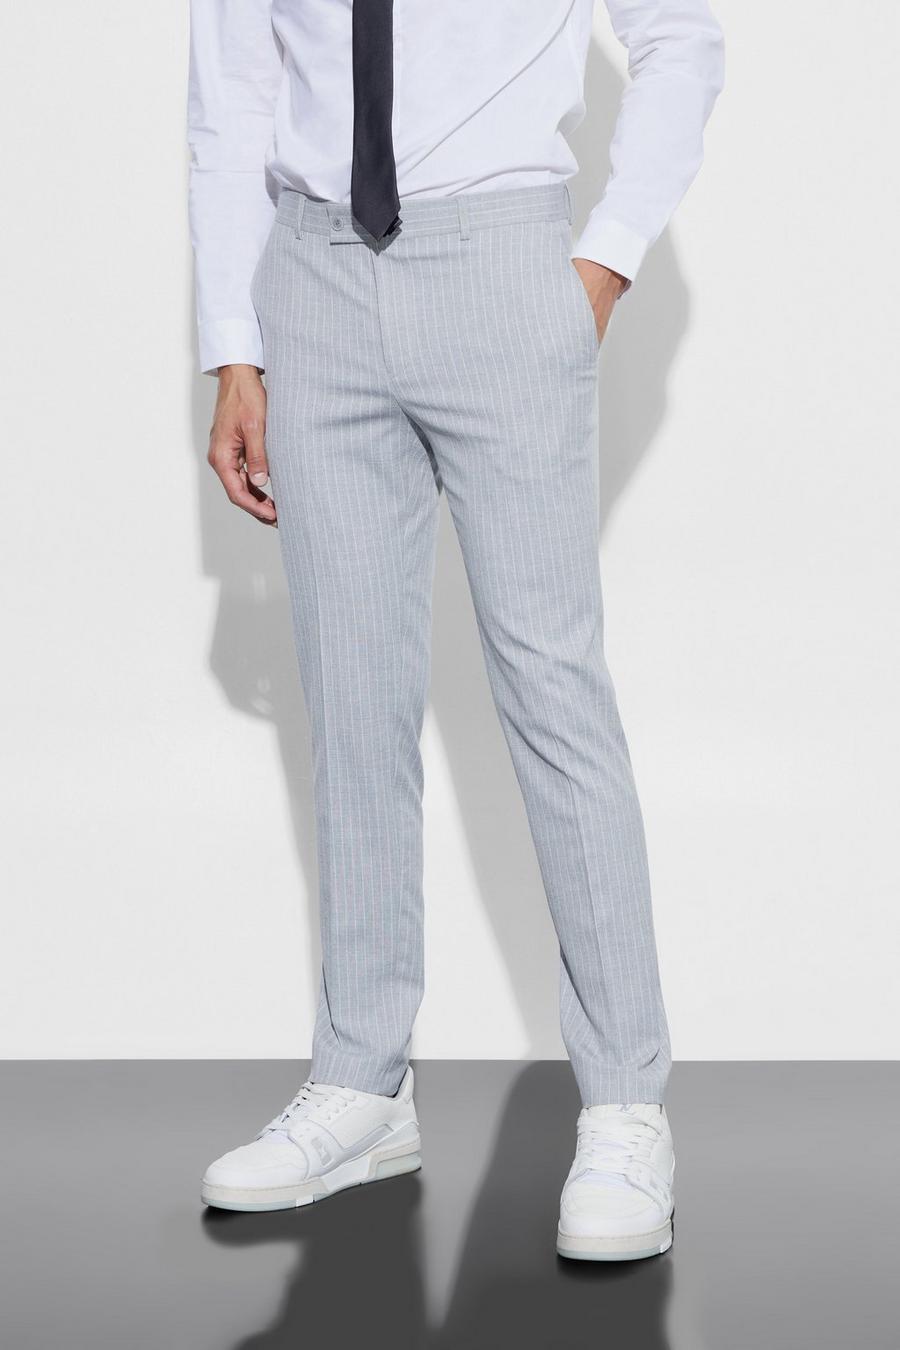 Pantaloni Skinny Fit a righe verticali, Light grey